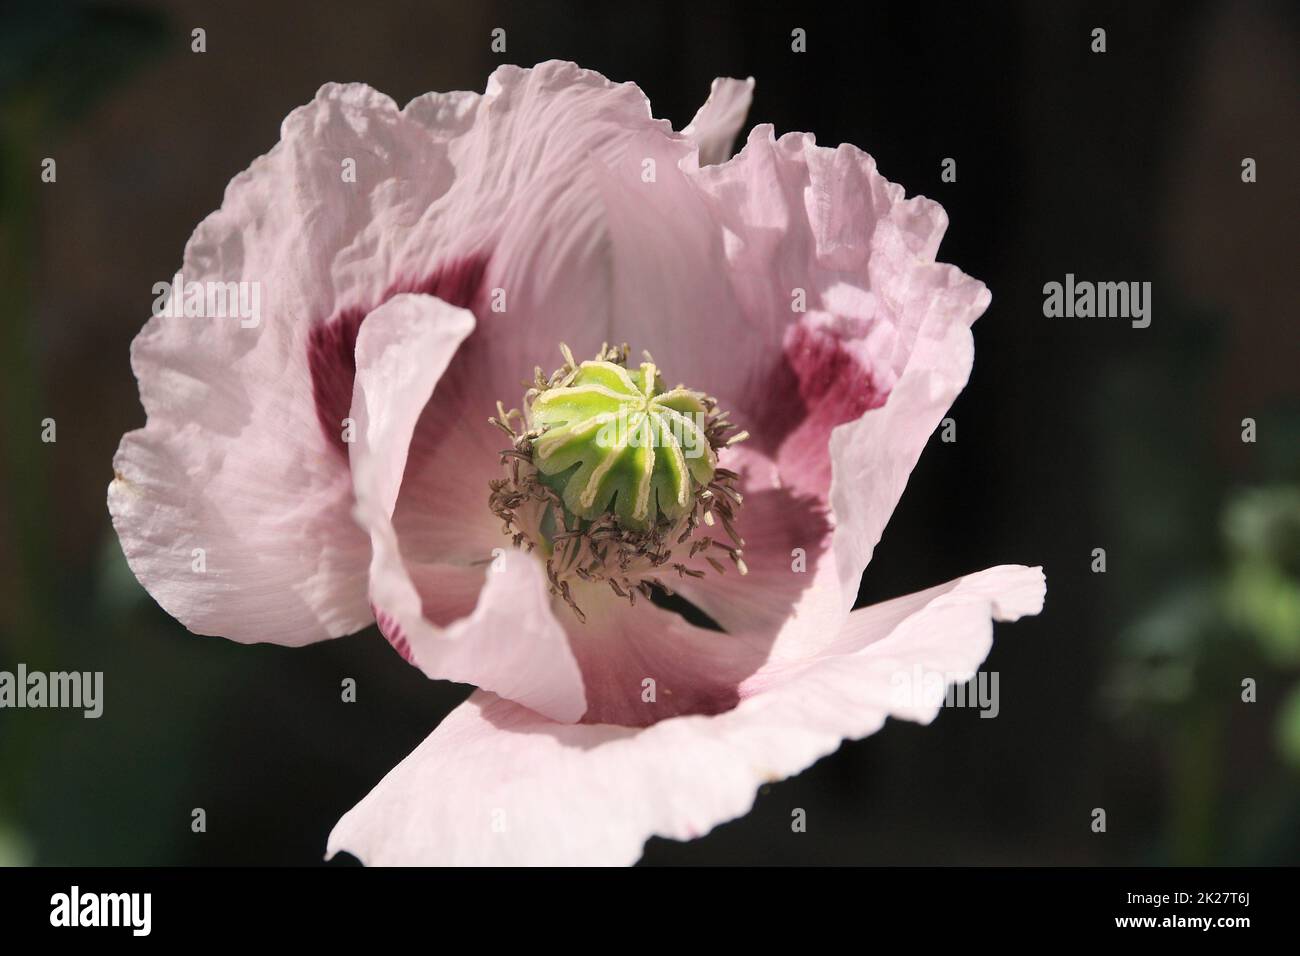 Blooming opium poppy Stock Photo